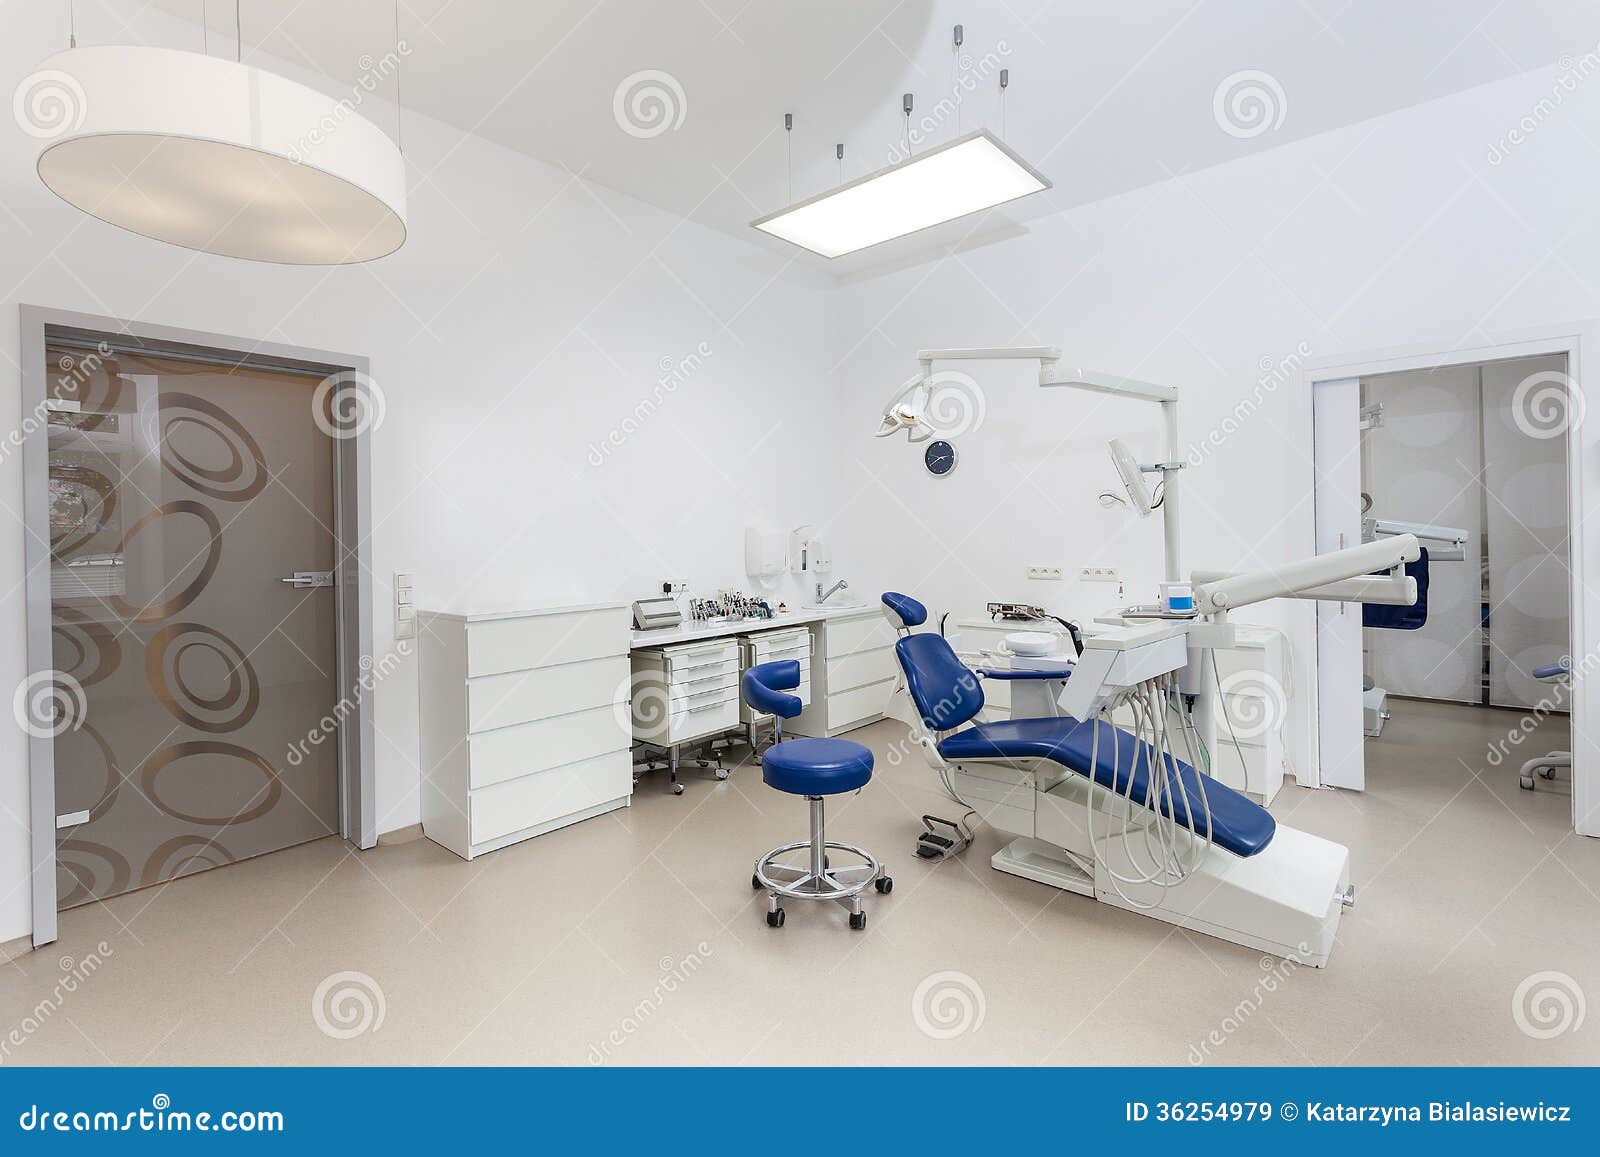 dental office interior